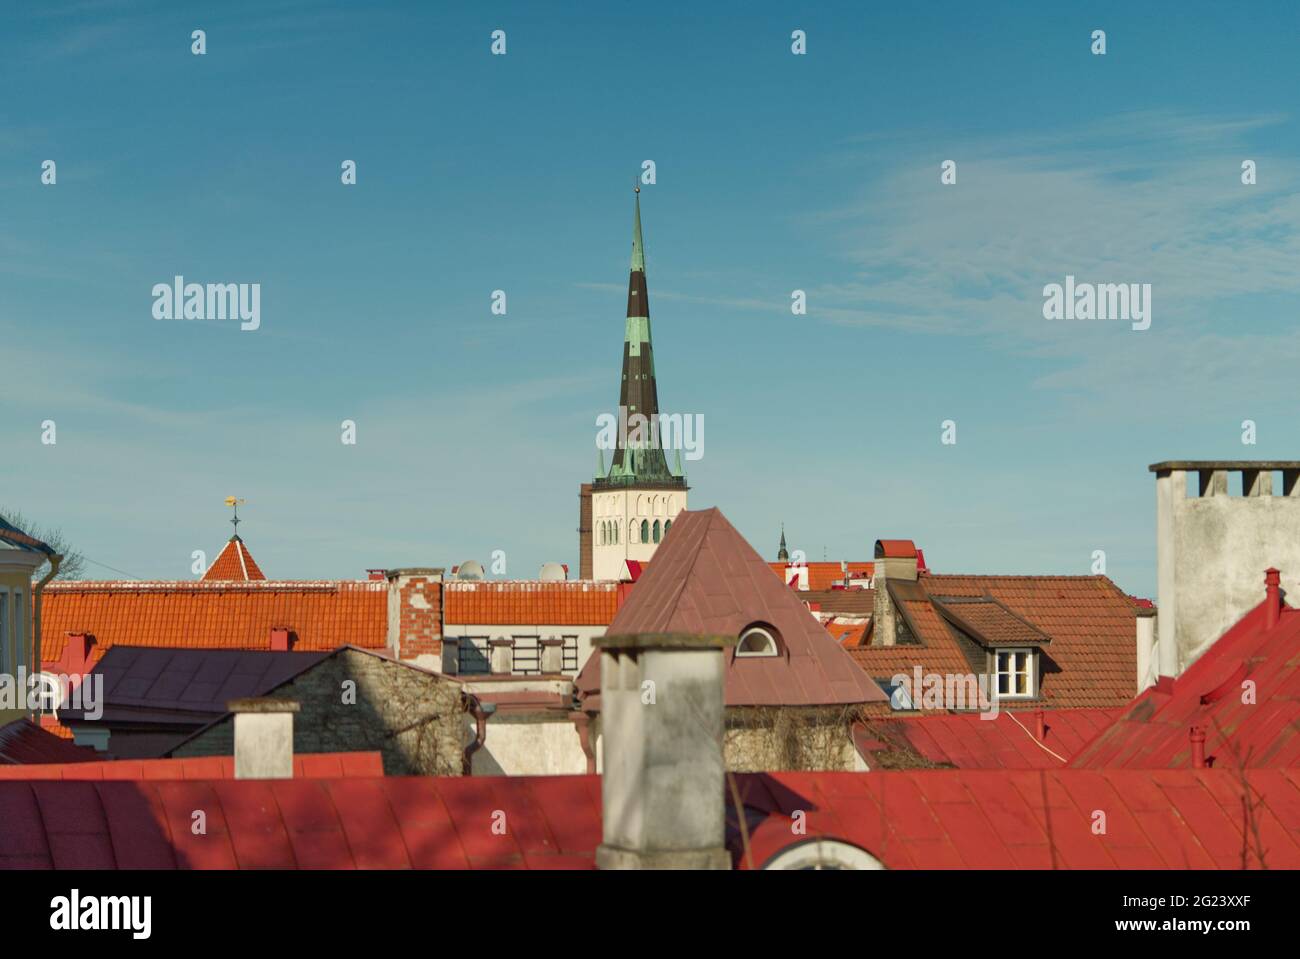 Panoramablick von der Aussichtsplattform Kohtuotsa, Estland. Altstädter Dächer, Kirchturm und neue Architektur. Sonniger Tag Frühling Stockfoto